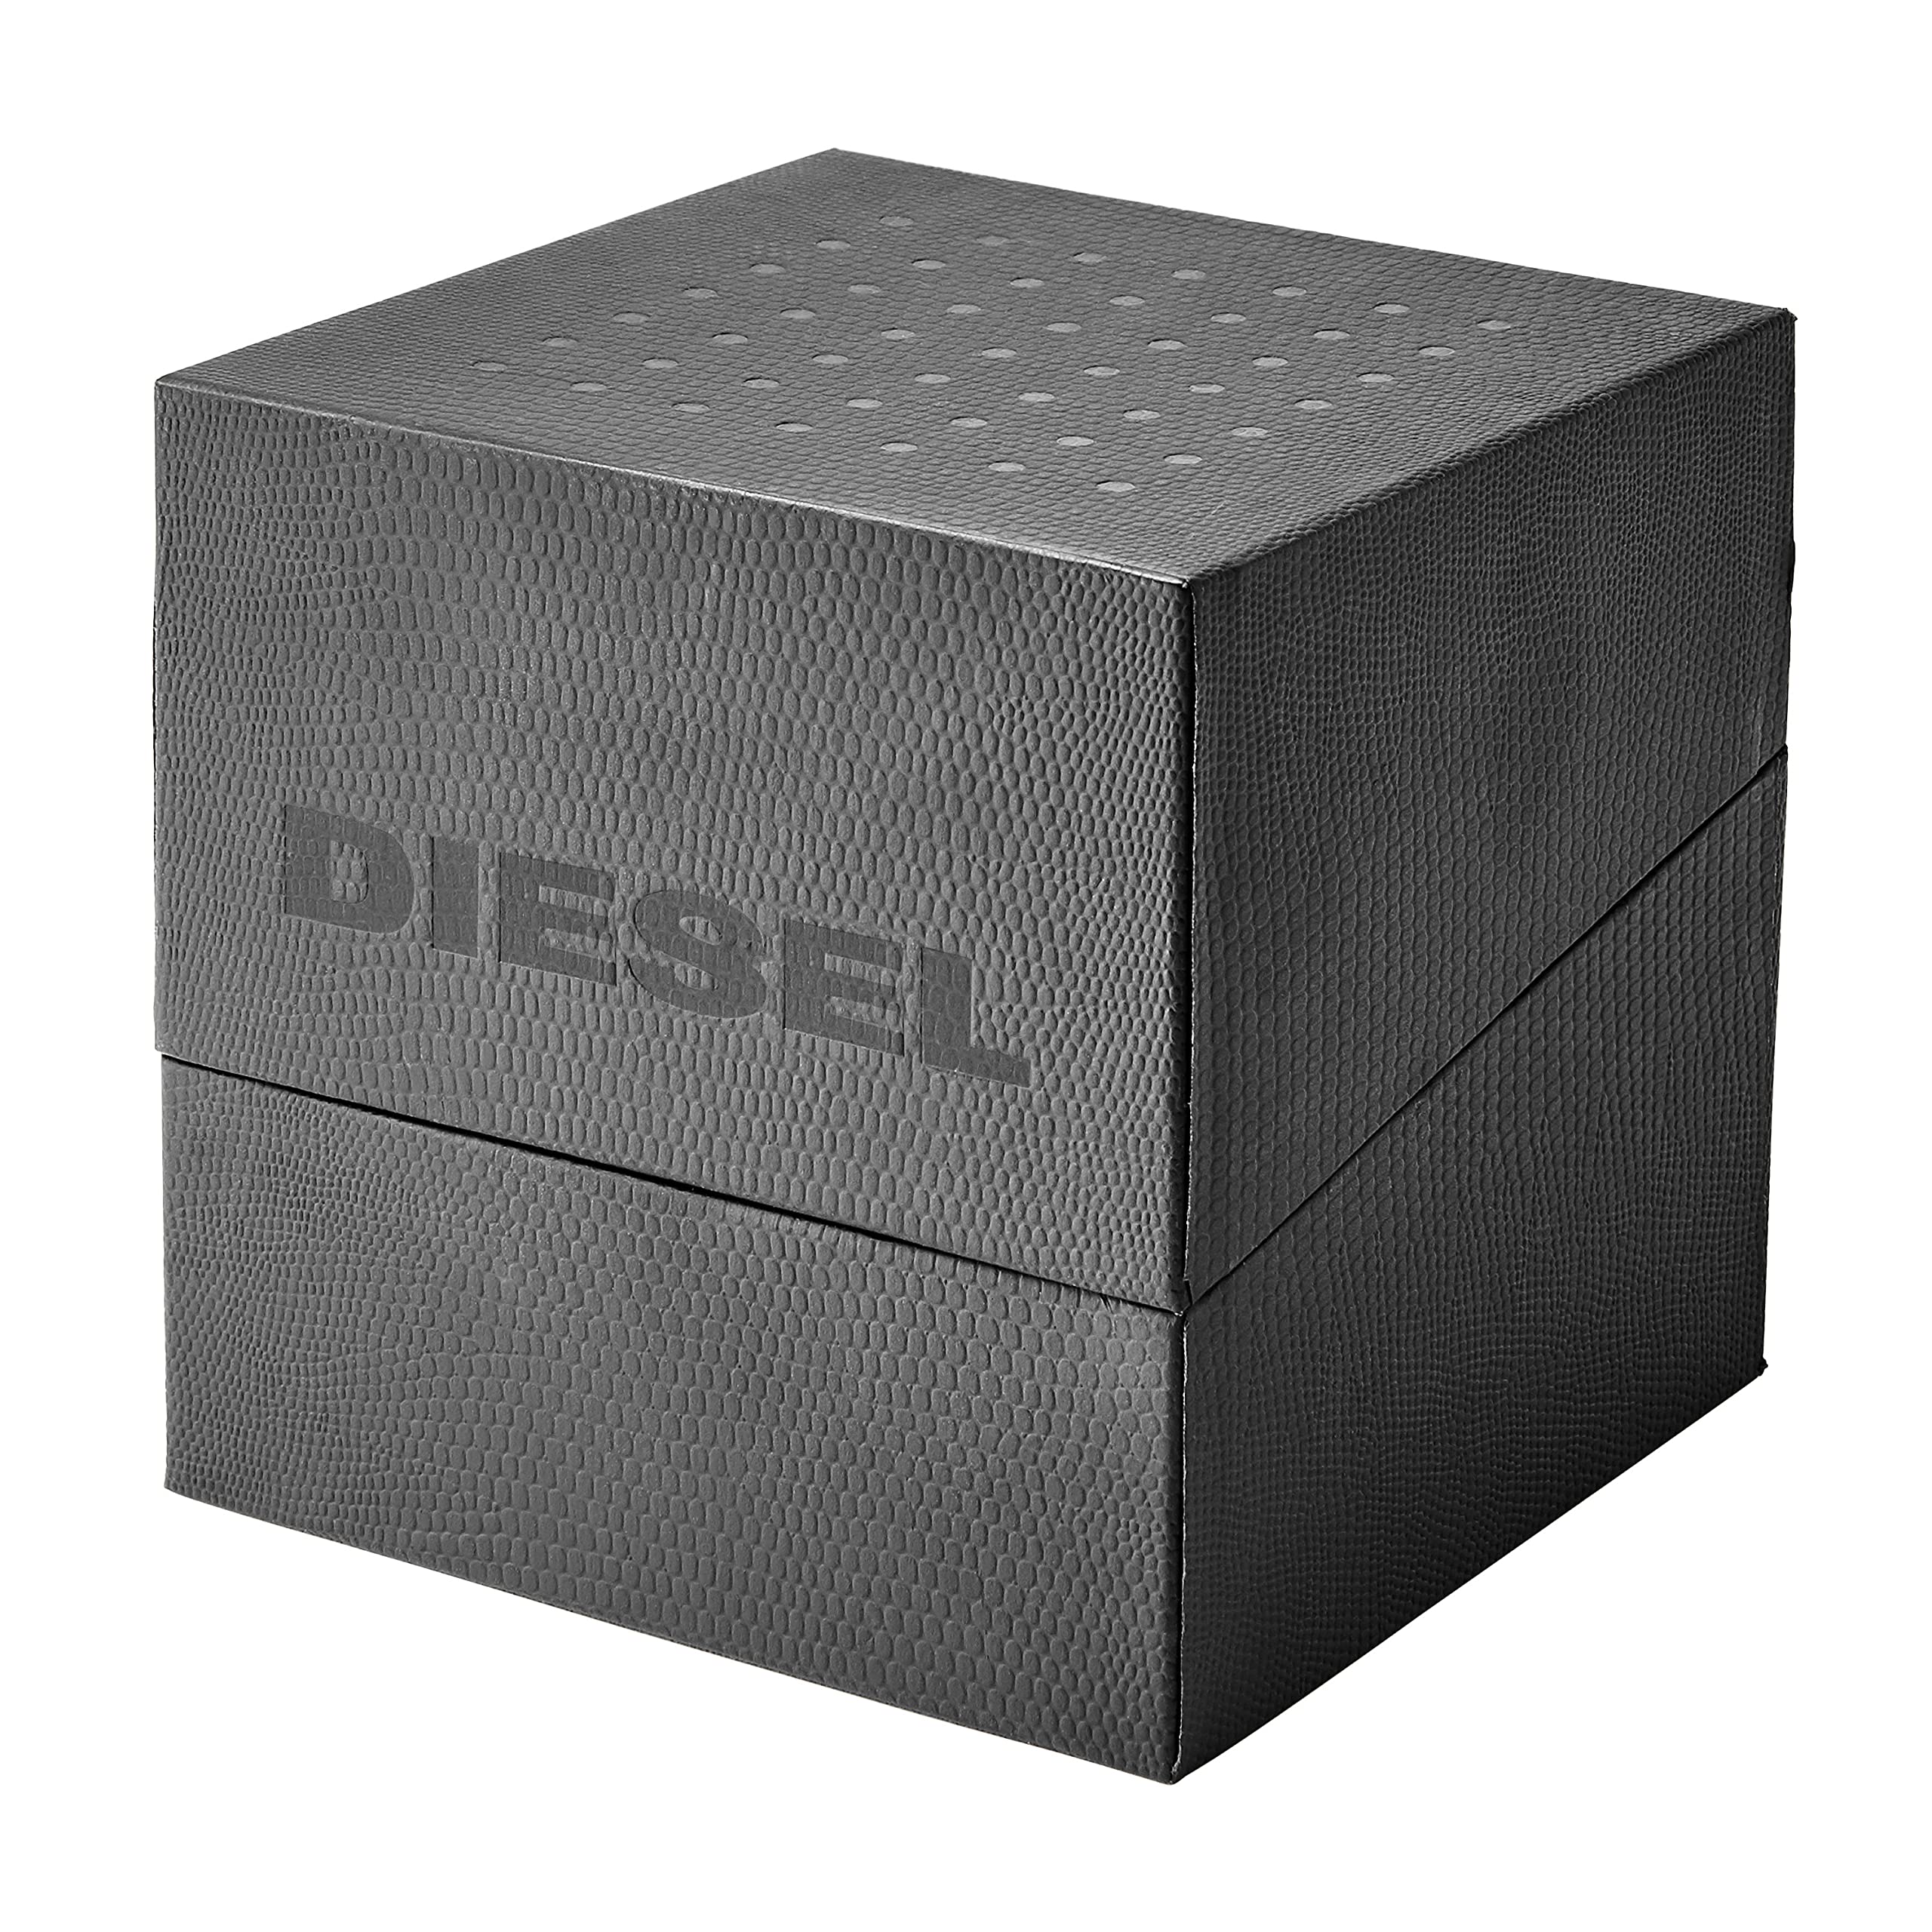 Рубленые цифровые часы - DZ1943 Diesel